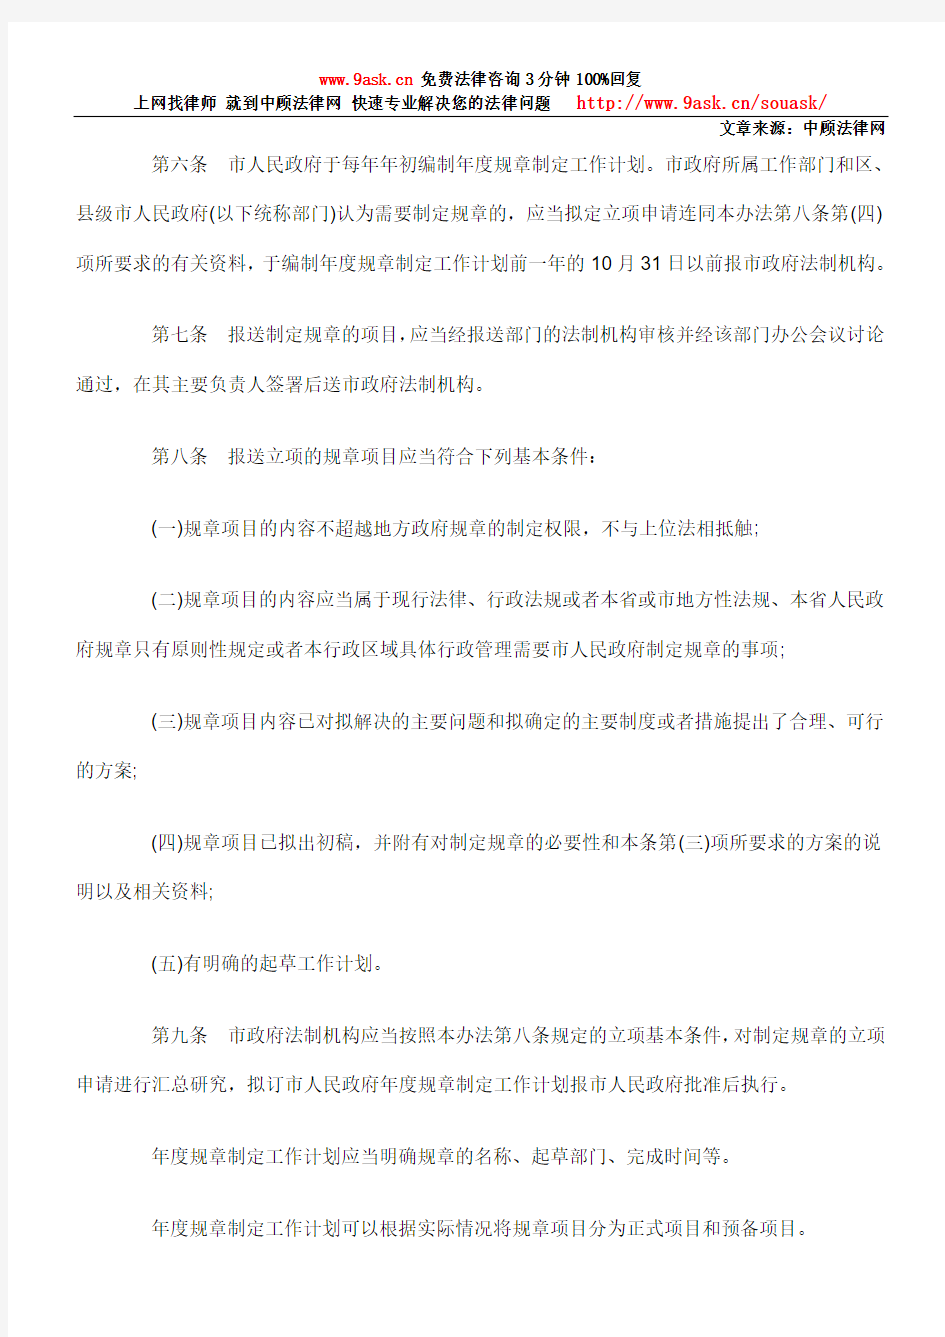 广州市人民政府规章制定办法(2010修正)